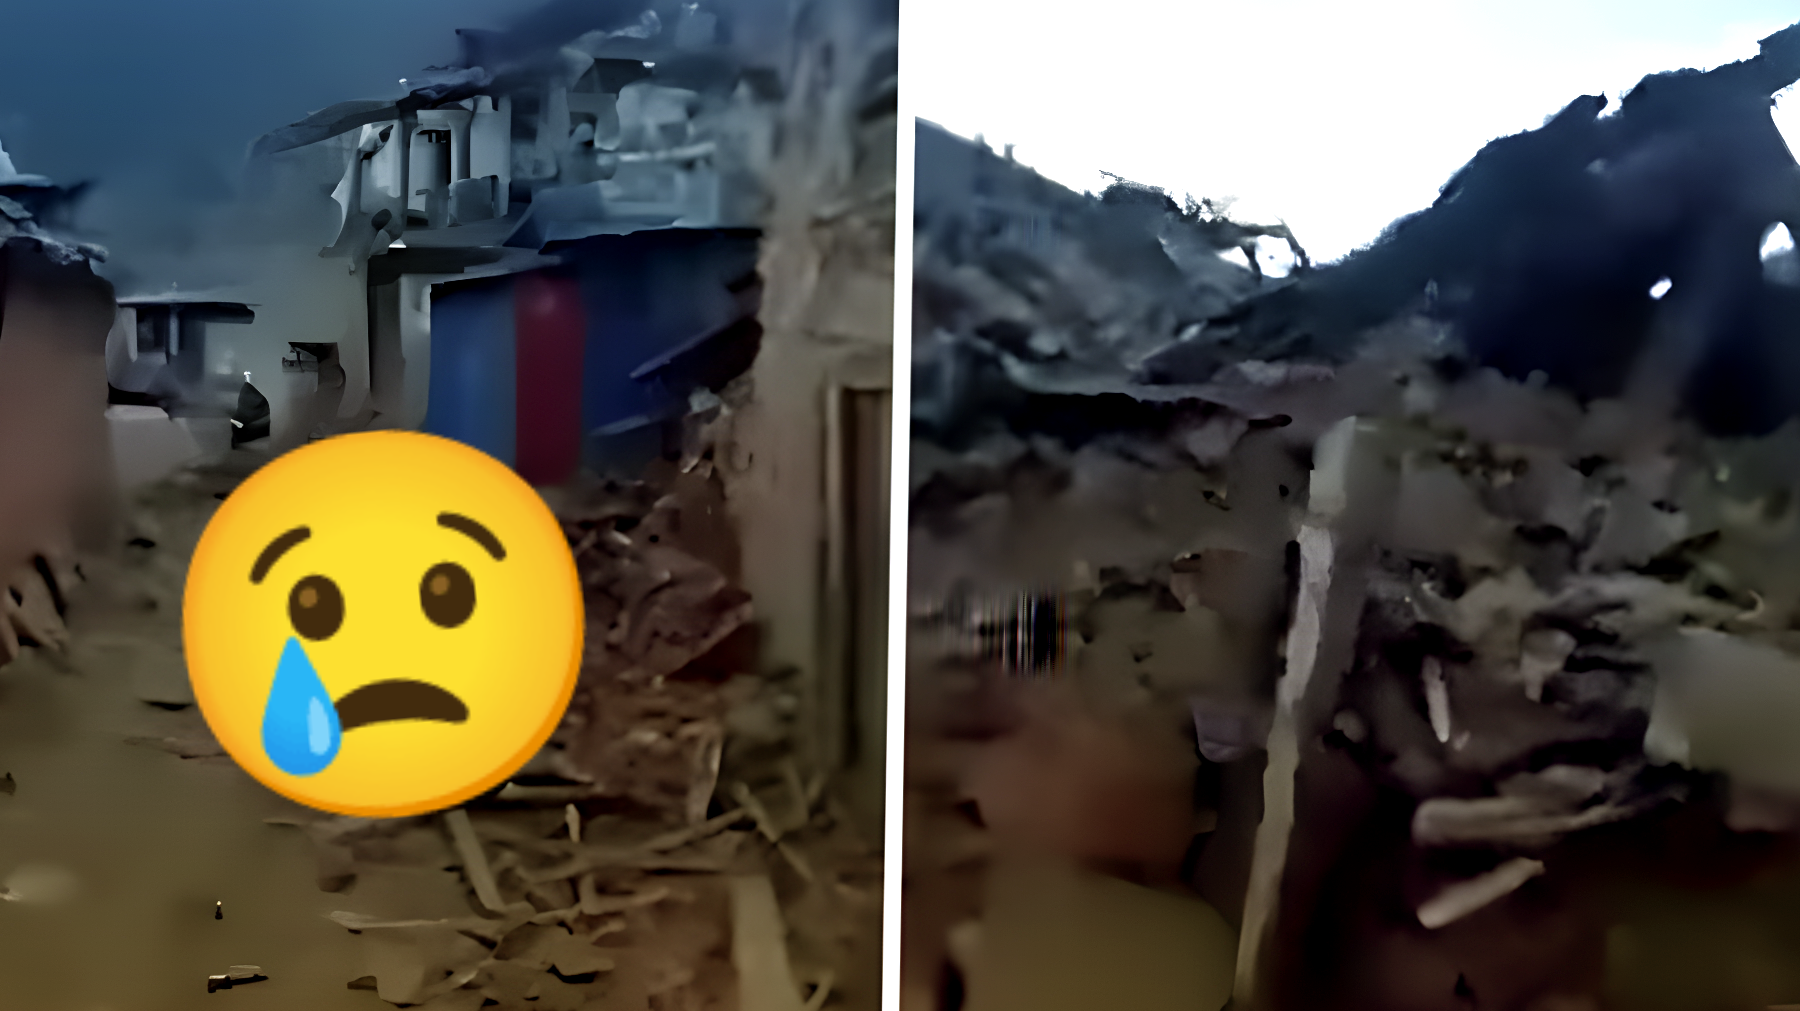 Incredibile video mostra le terribili conseguenze del terremoto in Nepal: 143 morti confermati